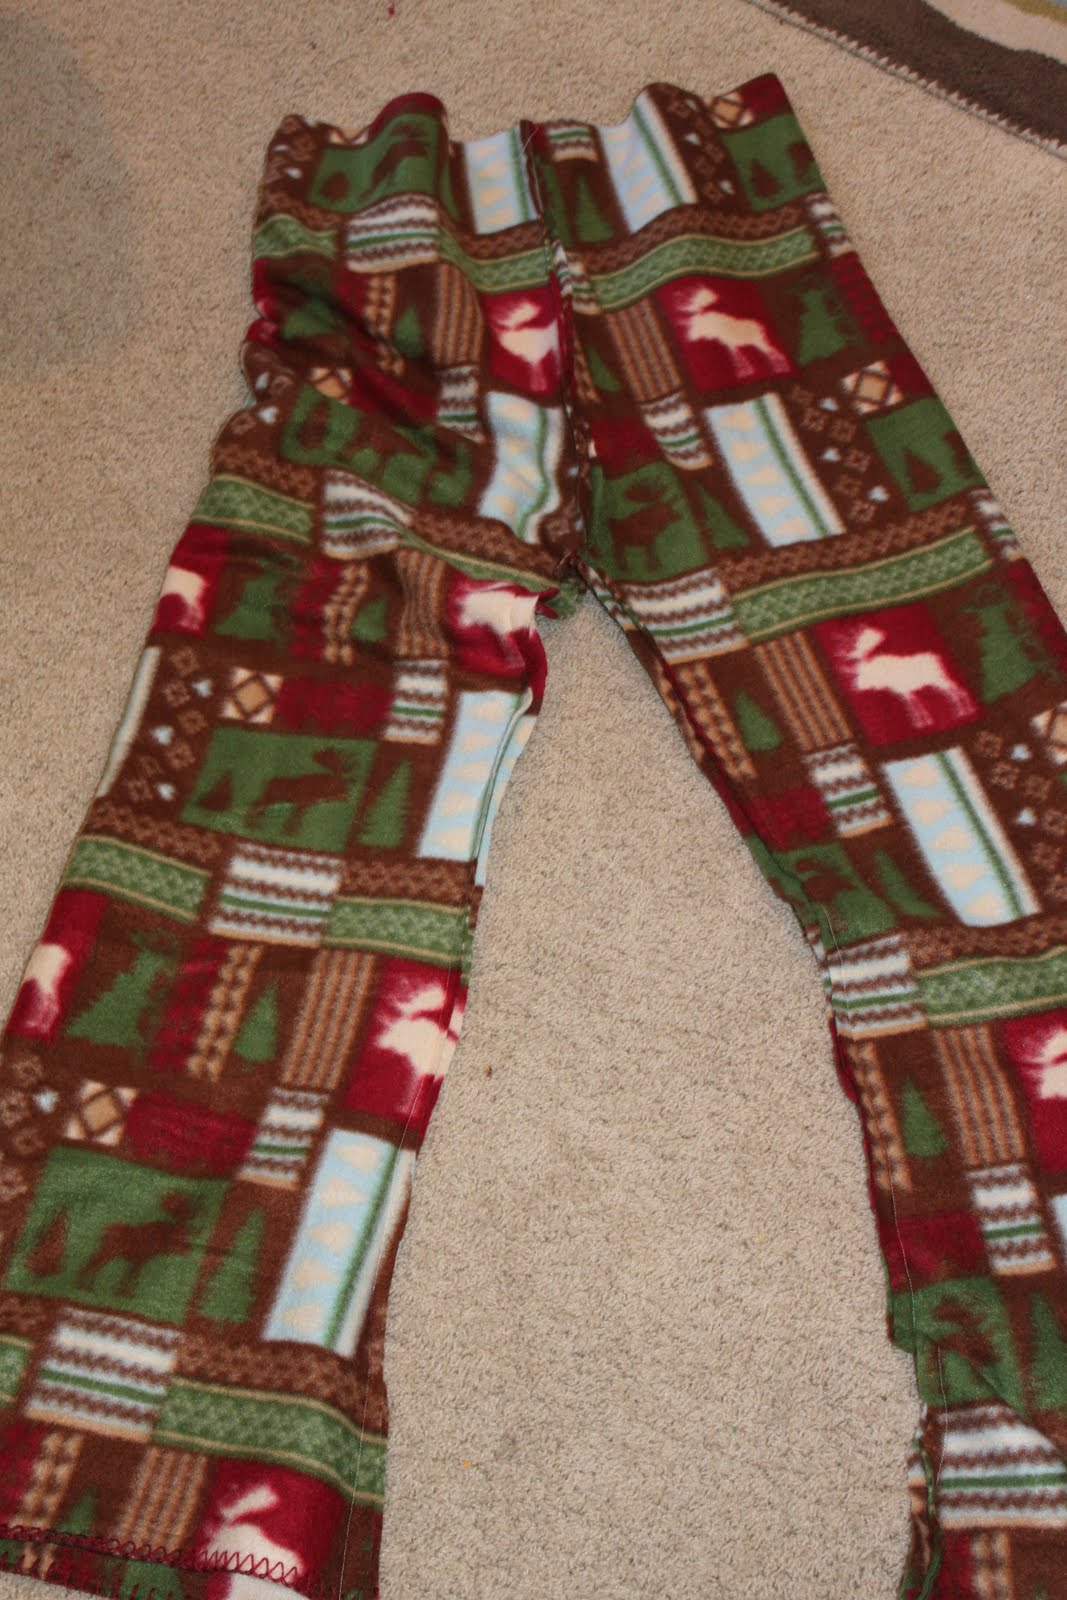 Tutorial Tuesday: Christmas Pajamas - Keeping it Simple